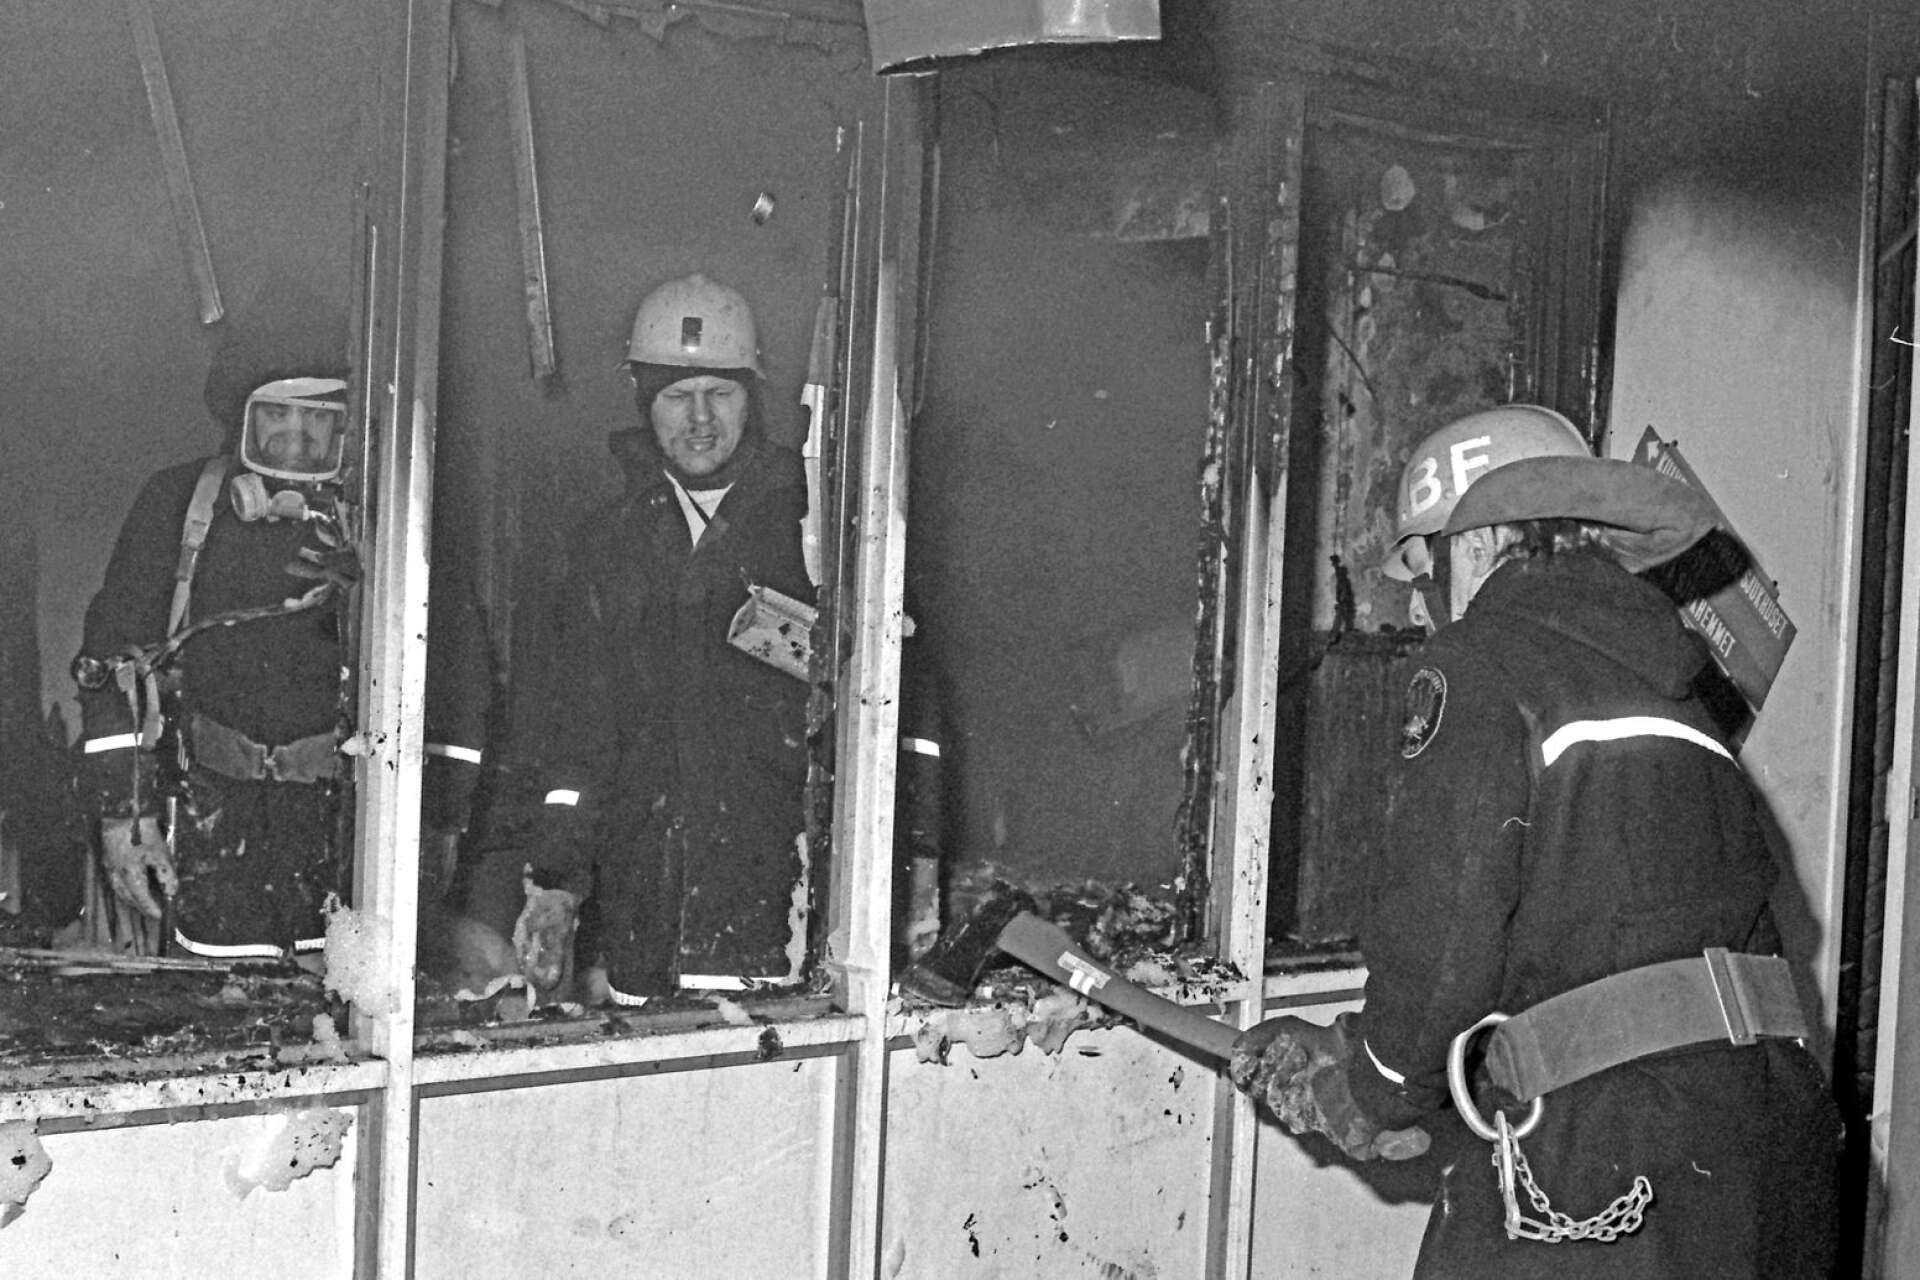 En dramatisk brand inträffade 1985 i sjukhuset i Säffle. Det var dramatiskt eftersom det i sjukhuset vid tillfället fanns många inneliggande patienter och rök spreds i byggnaden. Elden på bottenvåningen kunde släckas, men skadorna blev omfattande. 